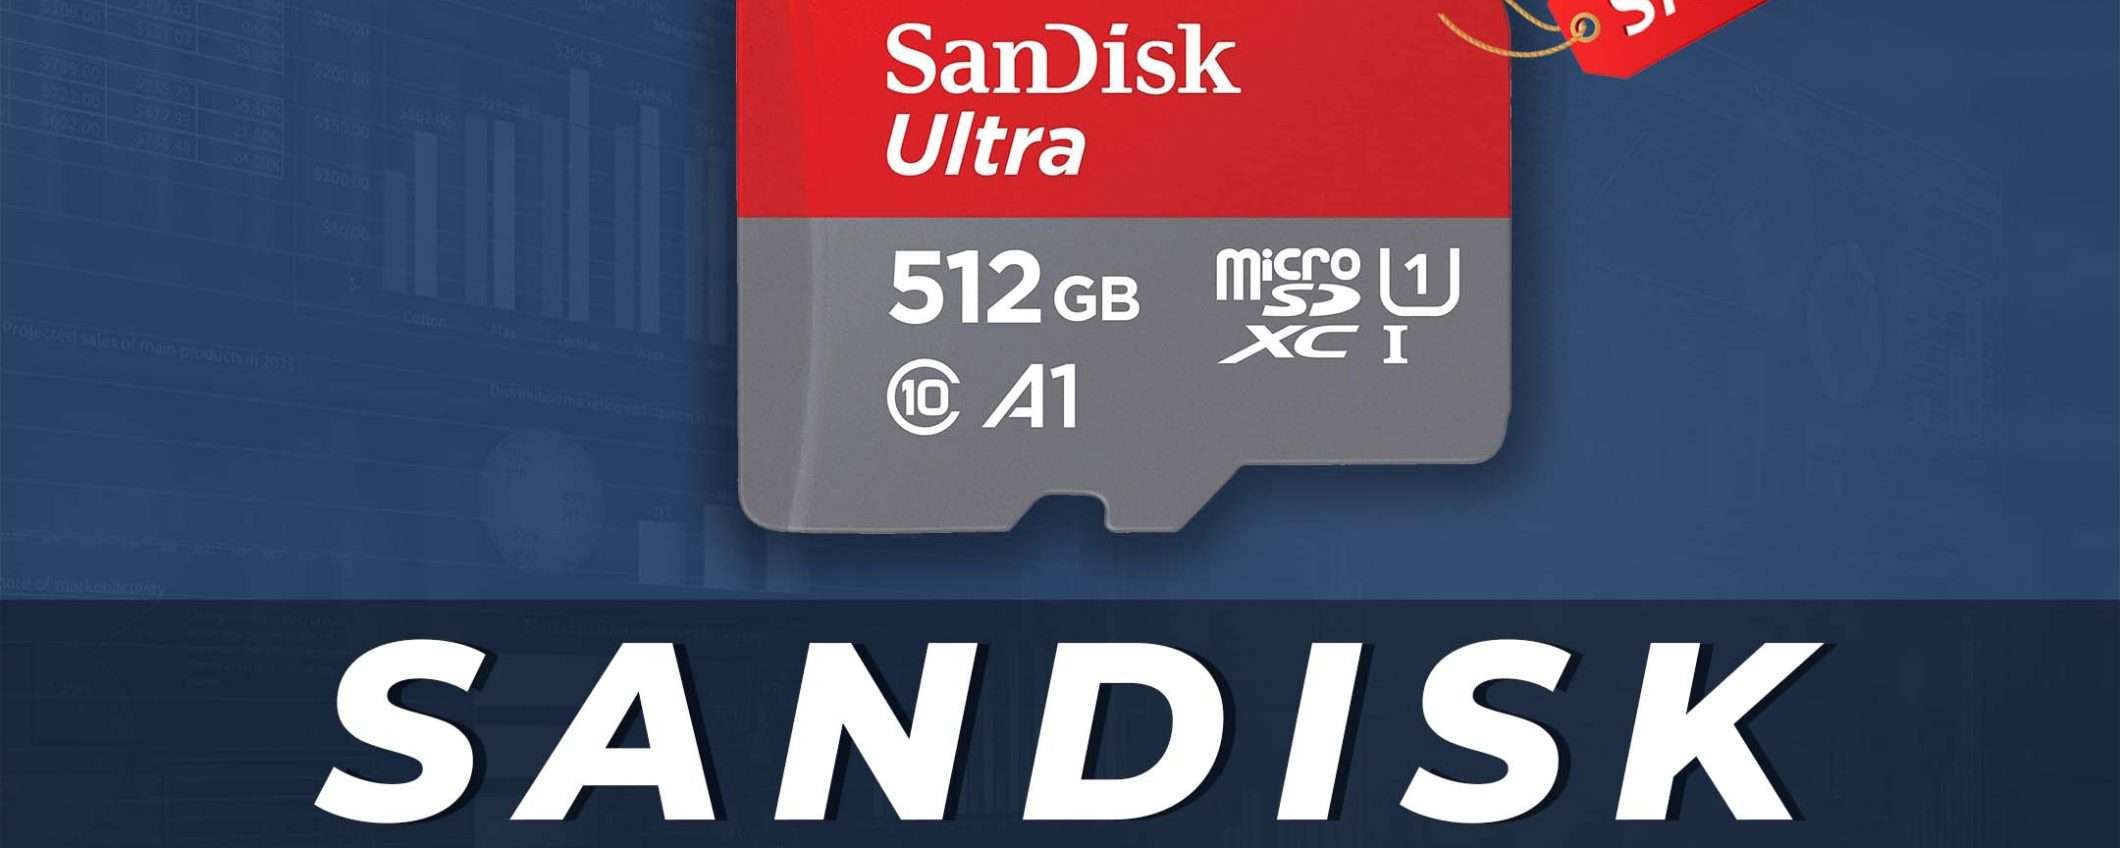 microSD SanDisk Ultra da 512GB in offerta al 19% di sconto